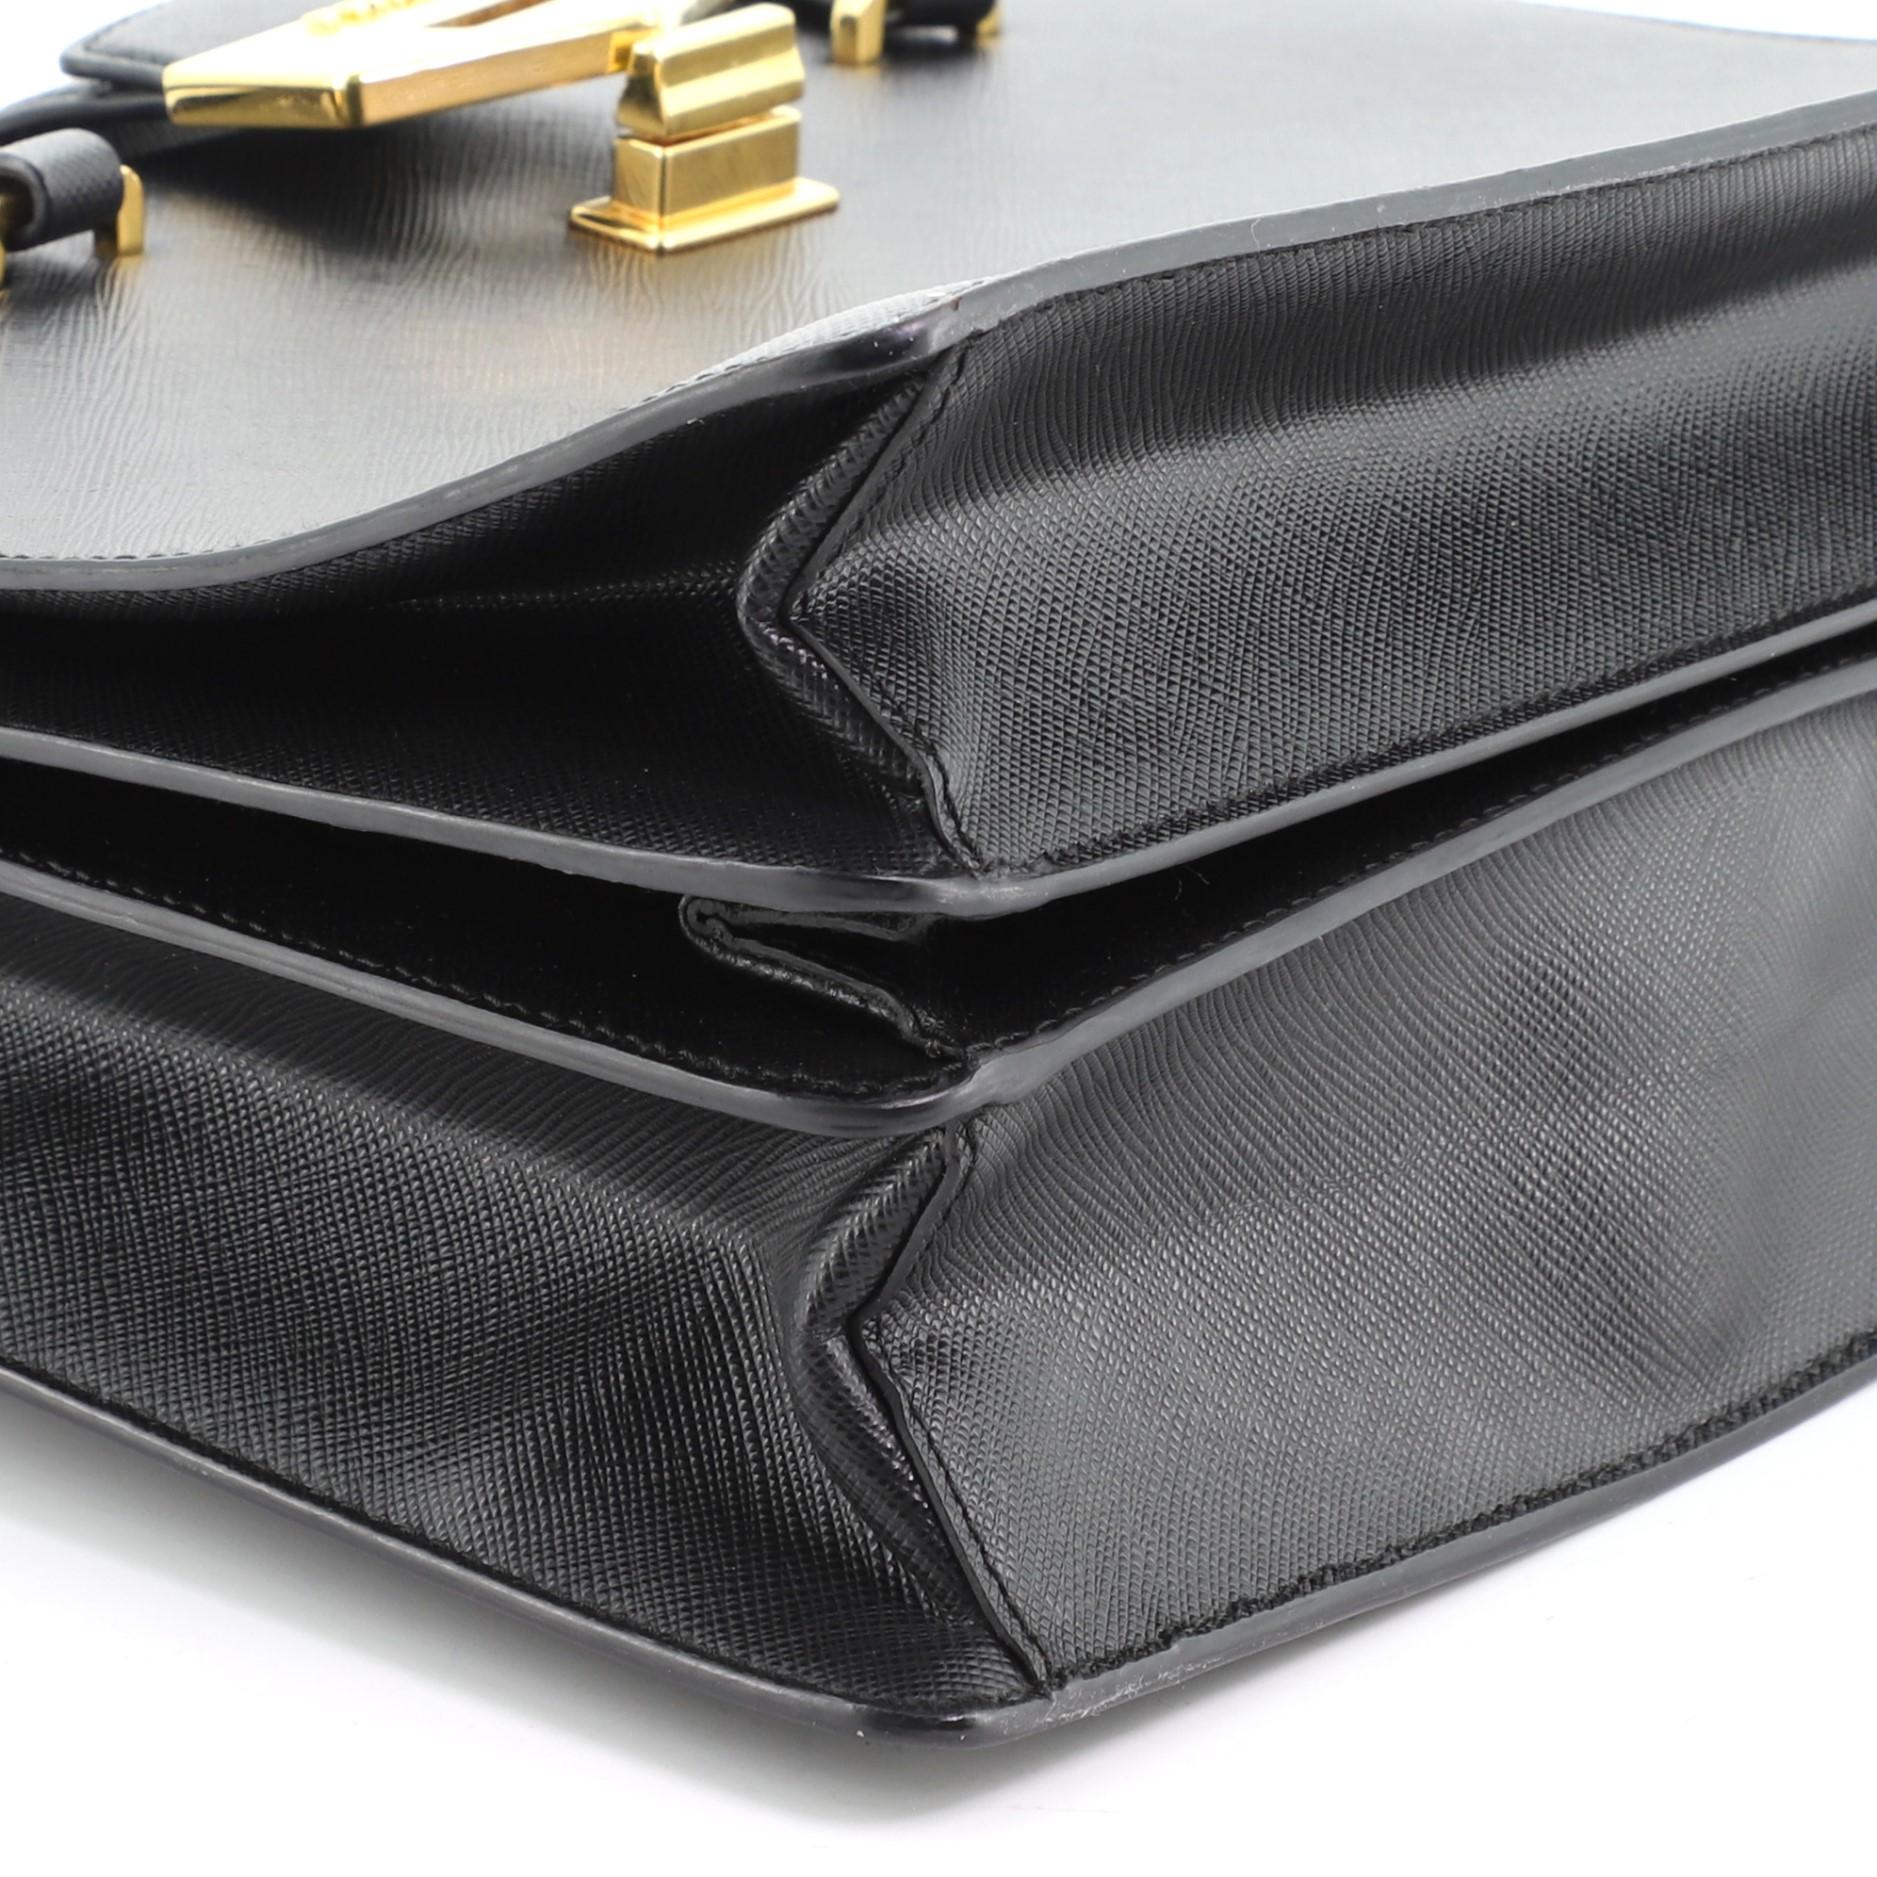 Black Prada Turnlock Flap Tote Saffiano Leather Medium